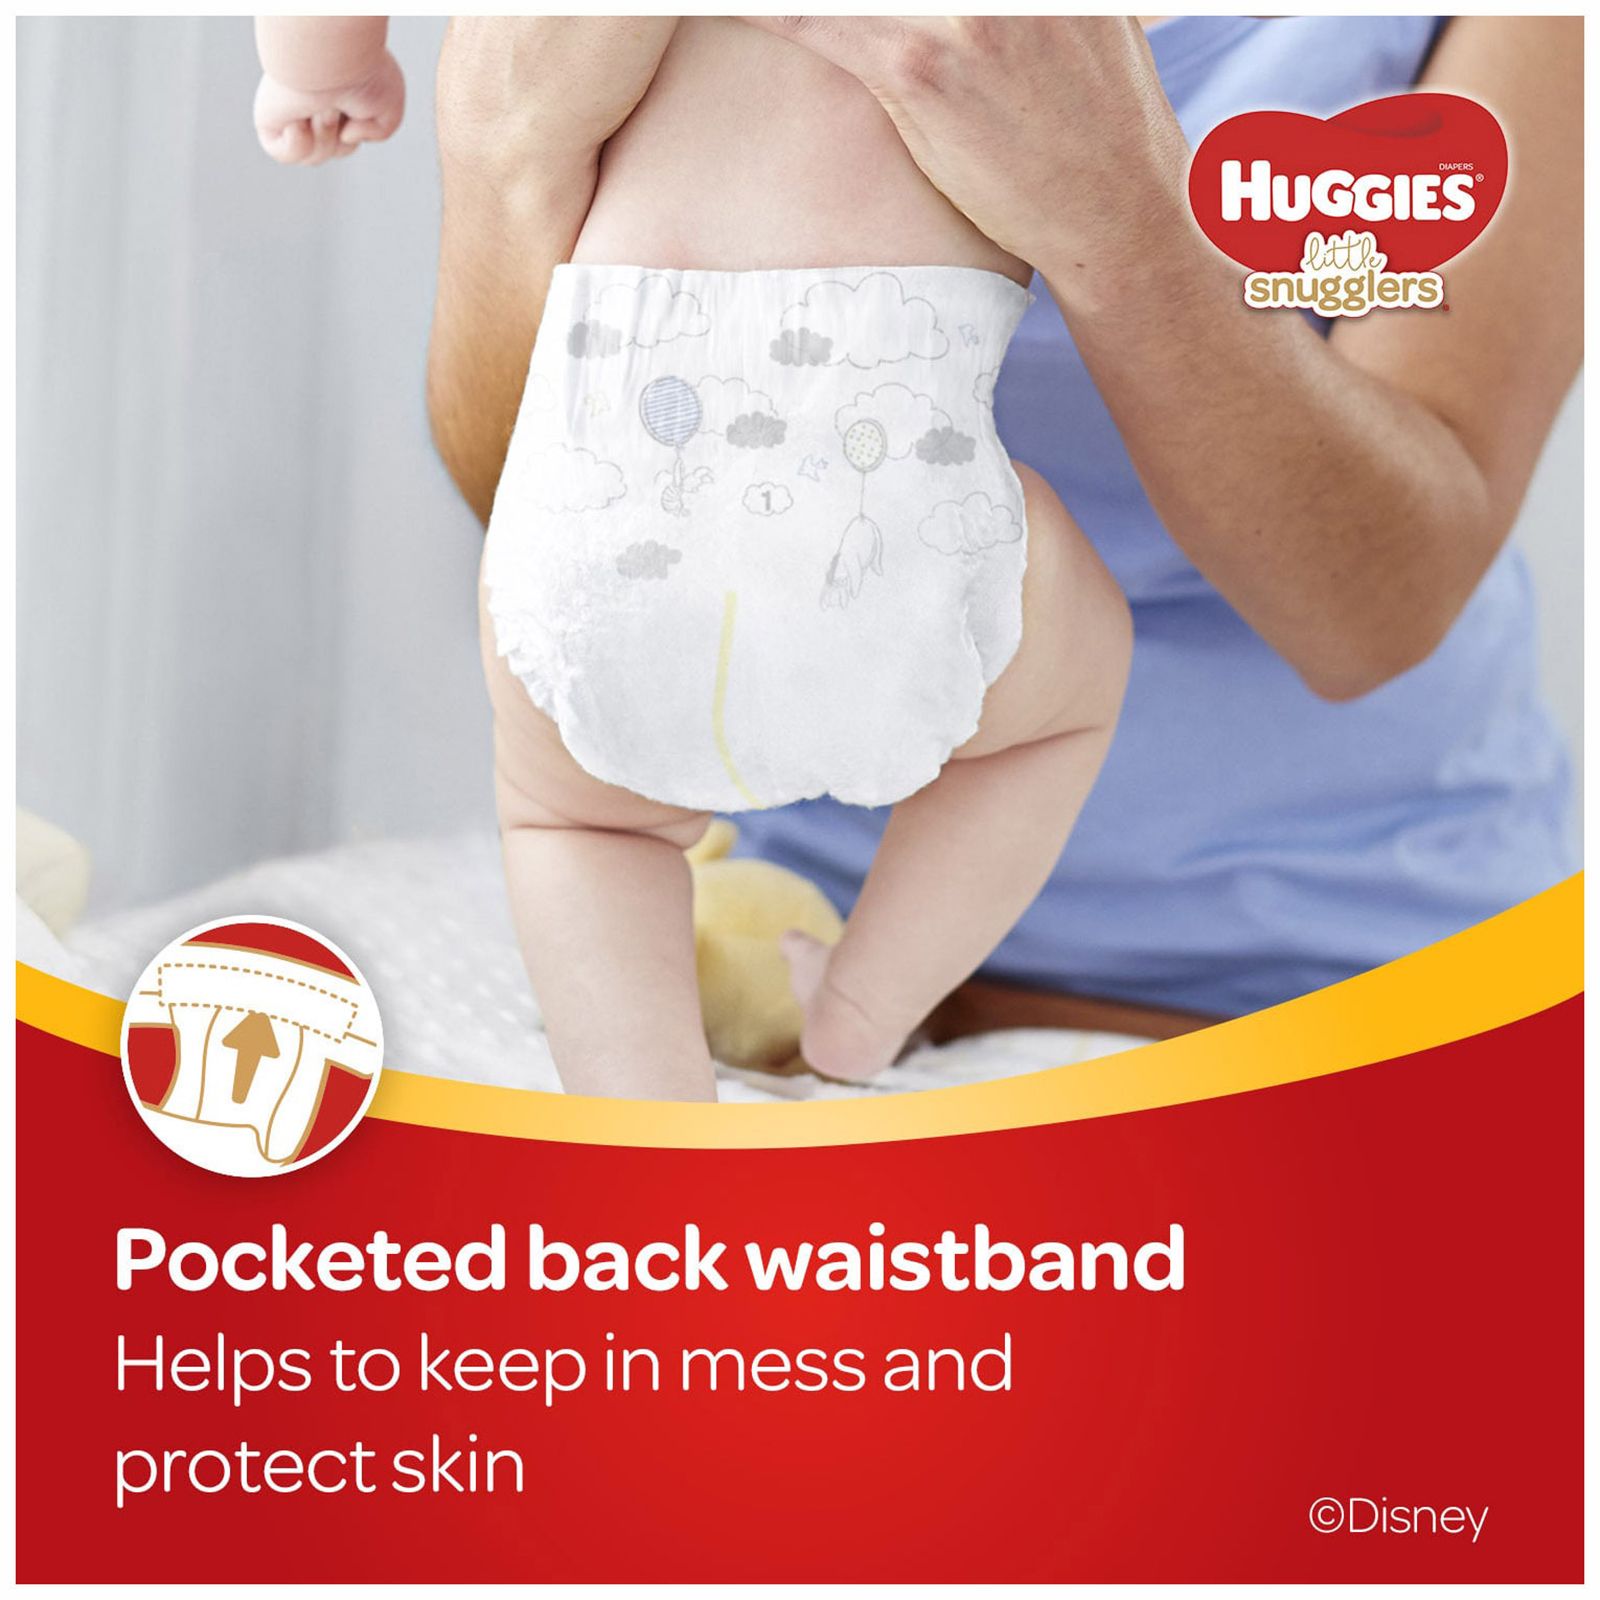 bjs baby diapers